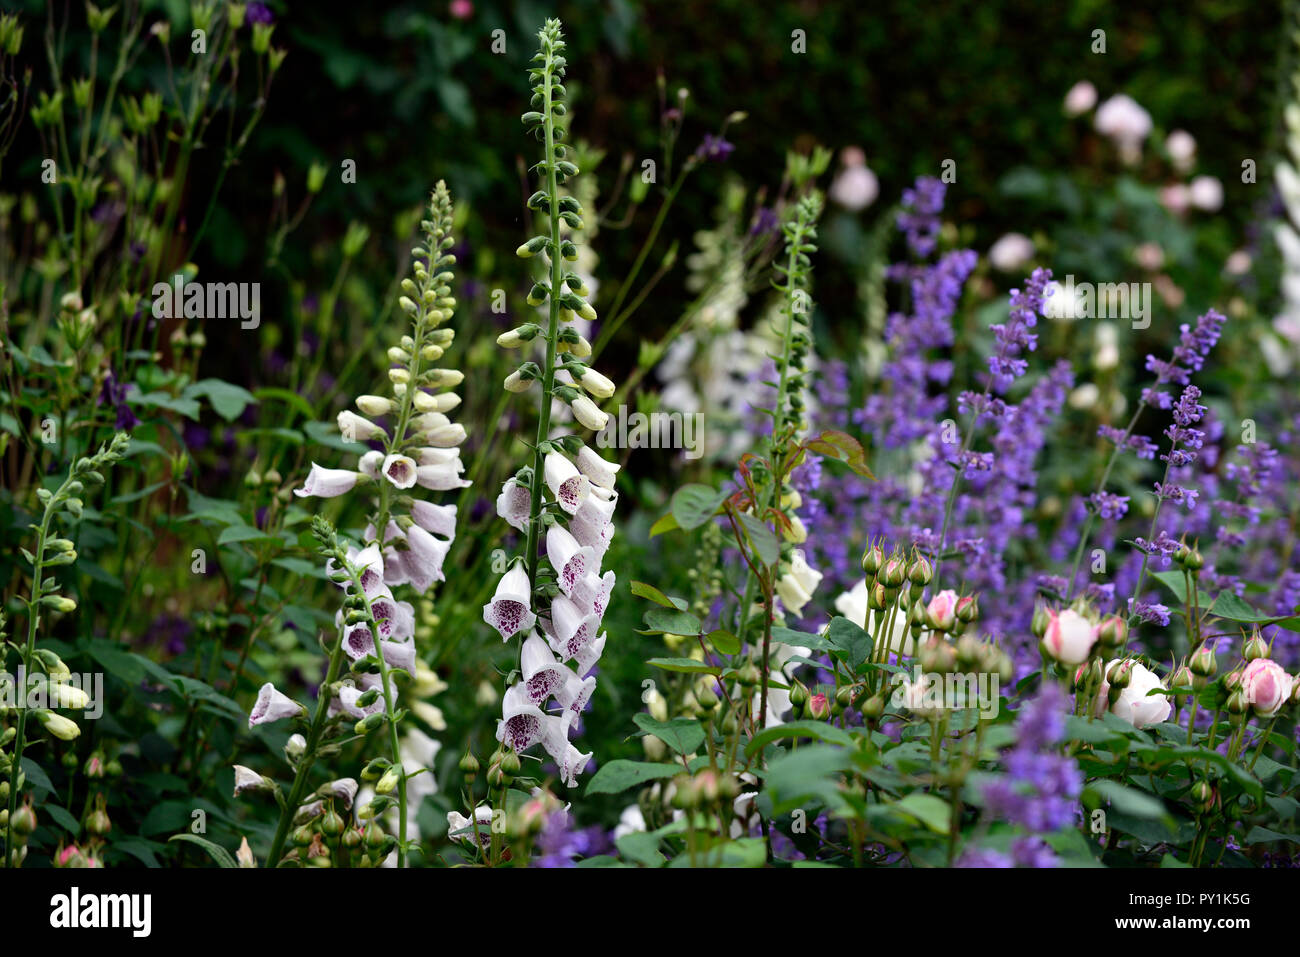 Digitalis purpurea dalmation white,nepeta six hills giant,rose,blanc,rose,digitales, fleurs, fleurs,fleurs,jardin,biennale Floral RM Banque D'Images